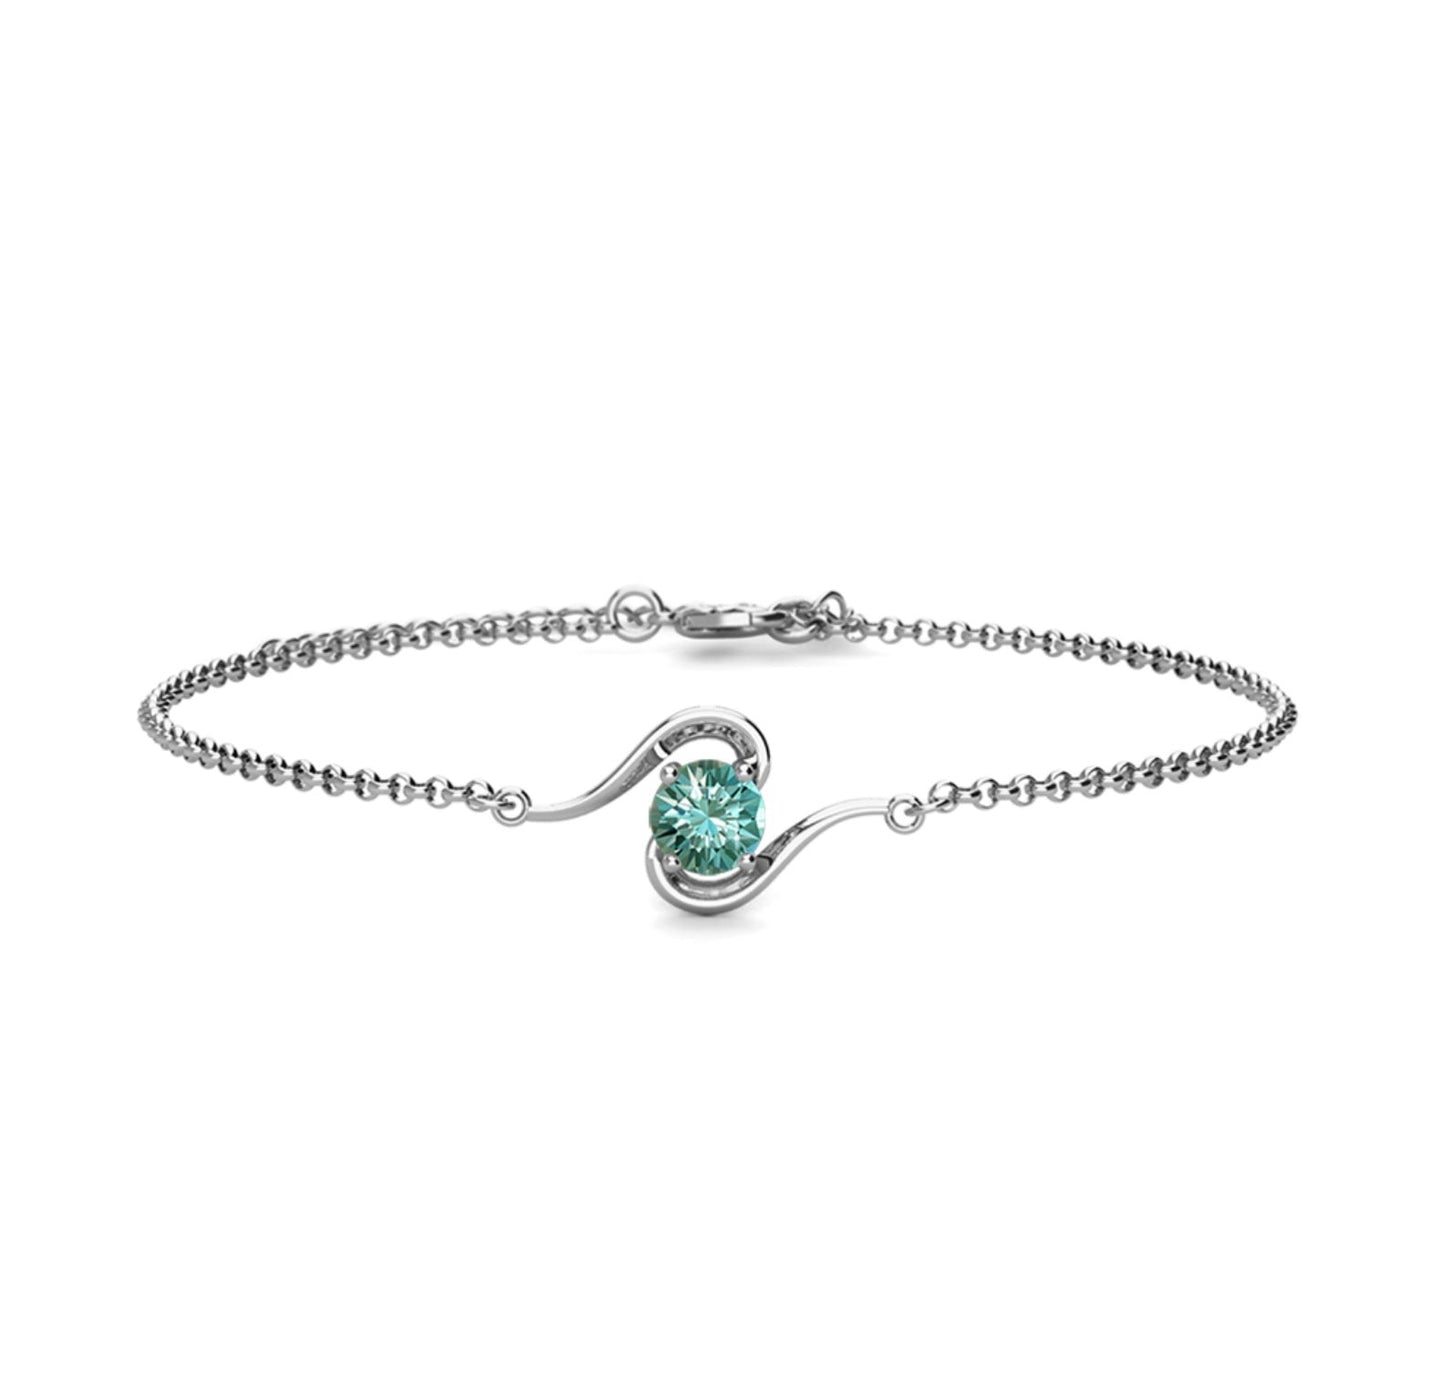 Choose your color 1 stone bracelet 1 carat